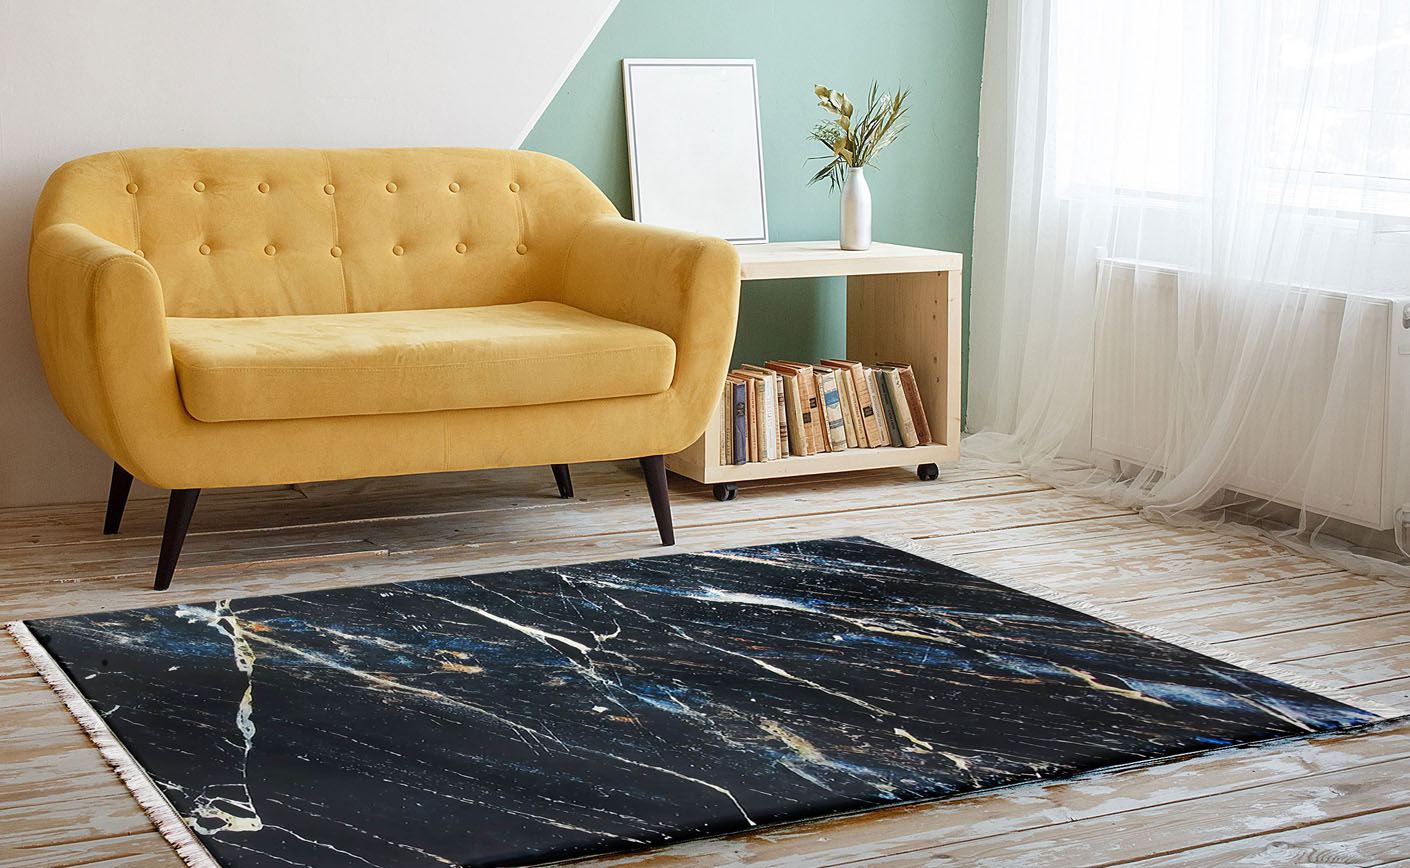 Co zrobić, by dywan nie ślizgał się po podłodze?